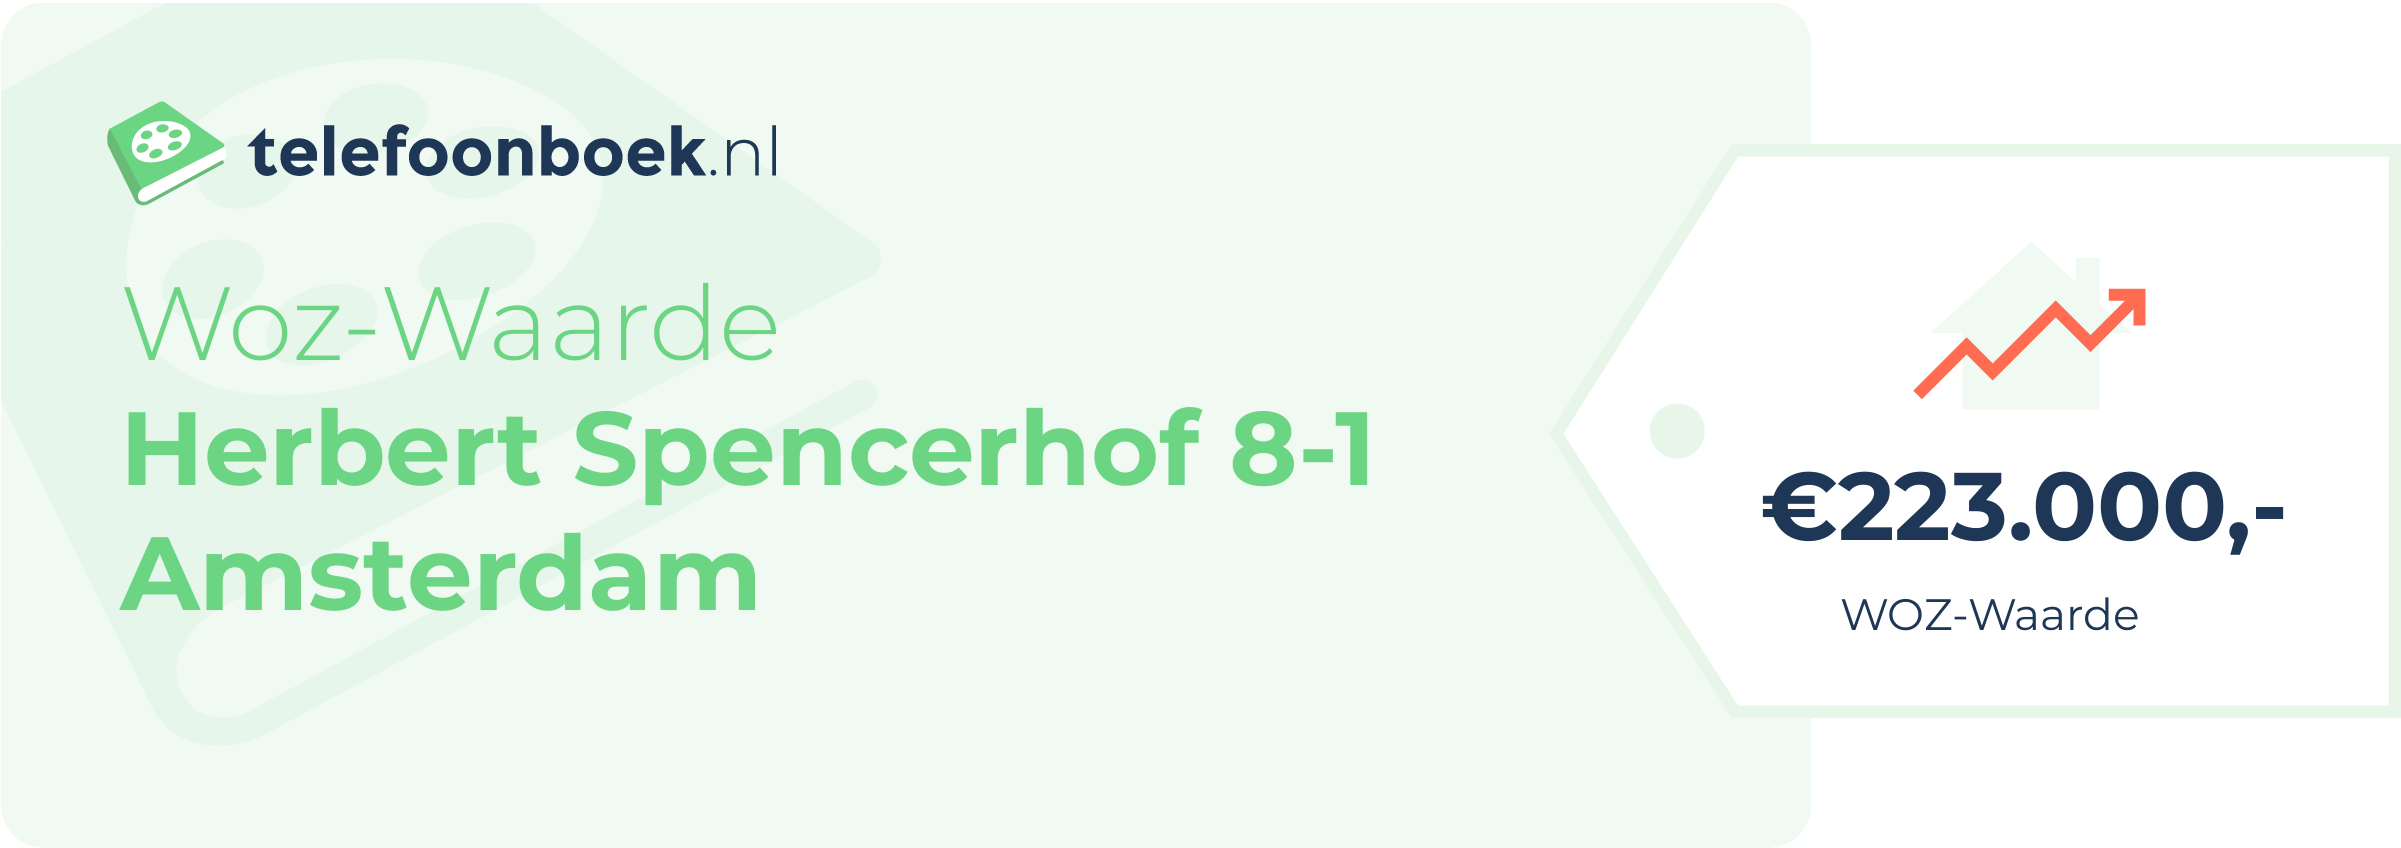 WOZ-waarde Herbert Spencerhof 8-1 Amsterdam